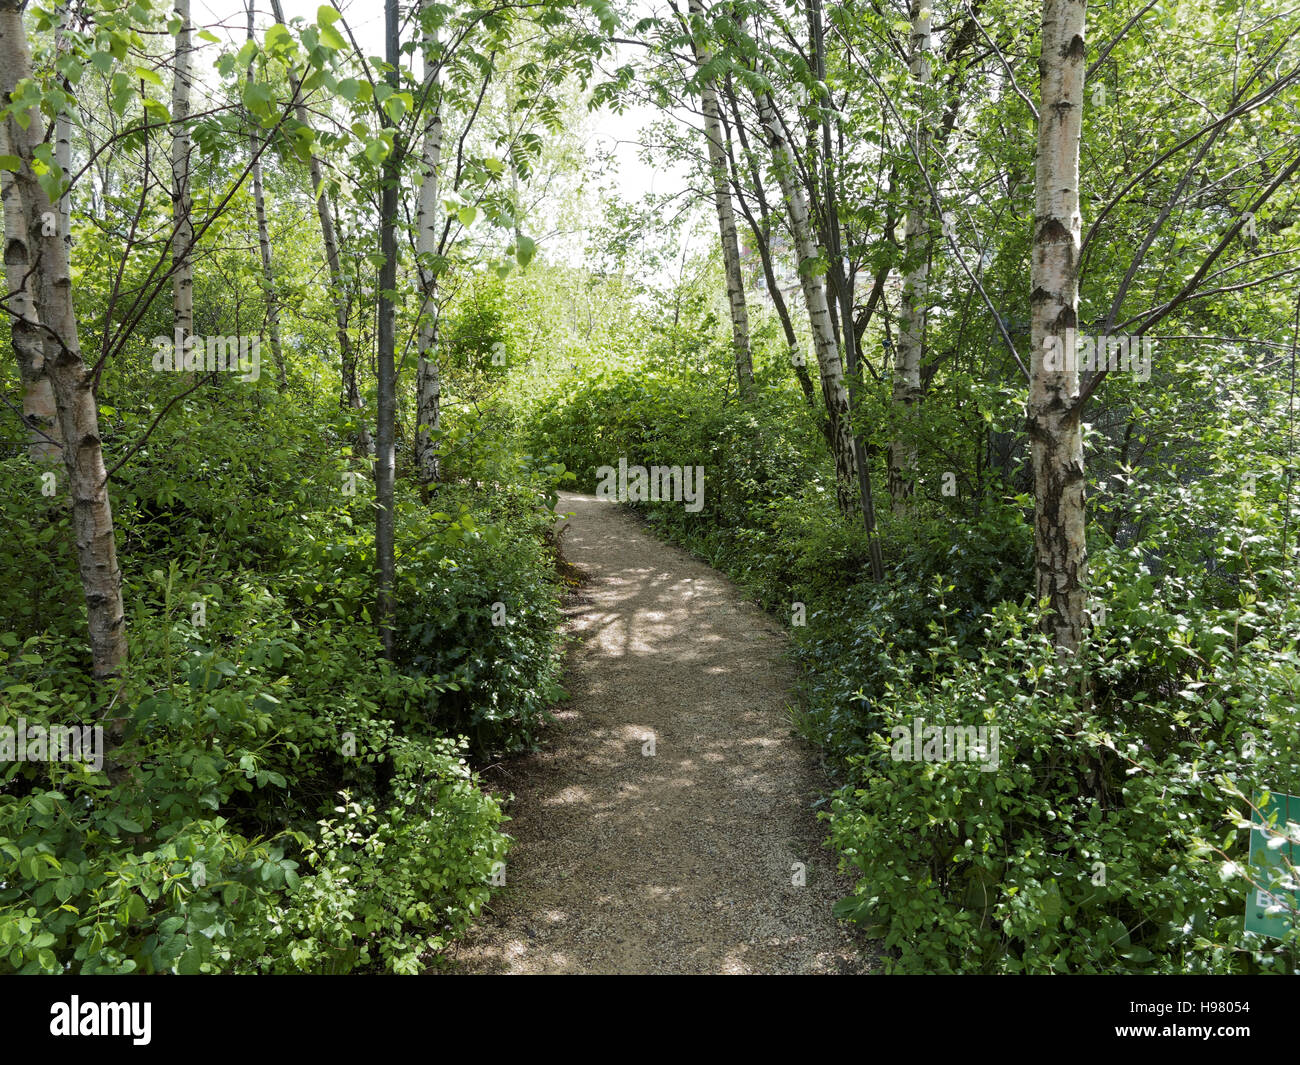 Scena di bosco verde estate con il percorso e il verde degli alberi leafed Foto Stock